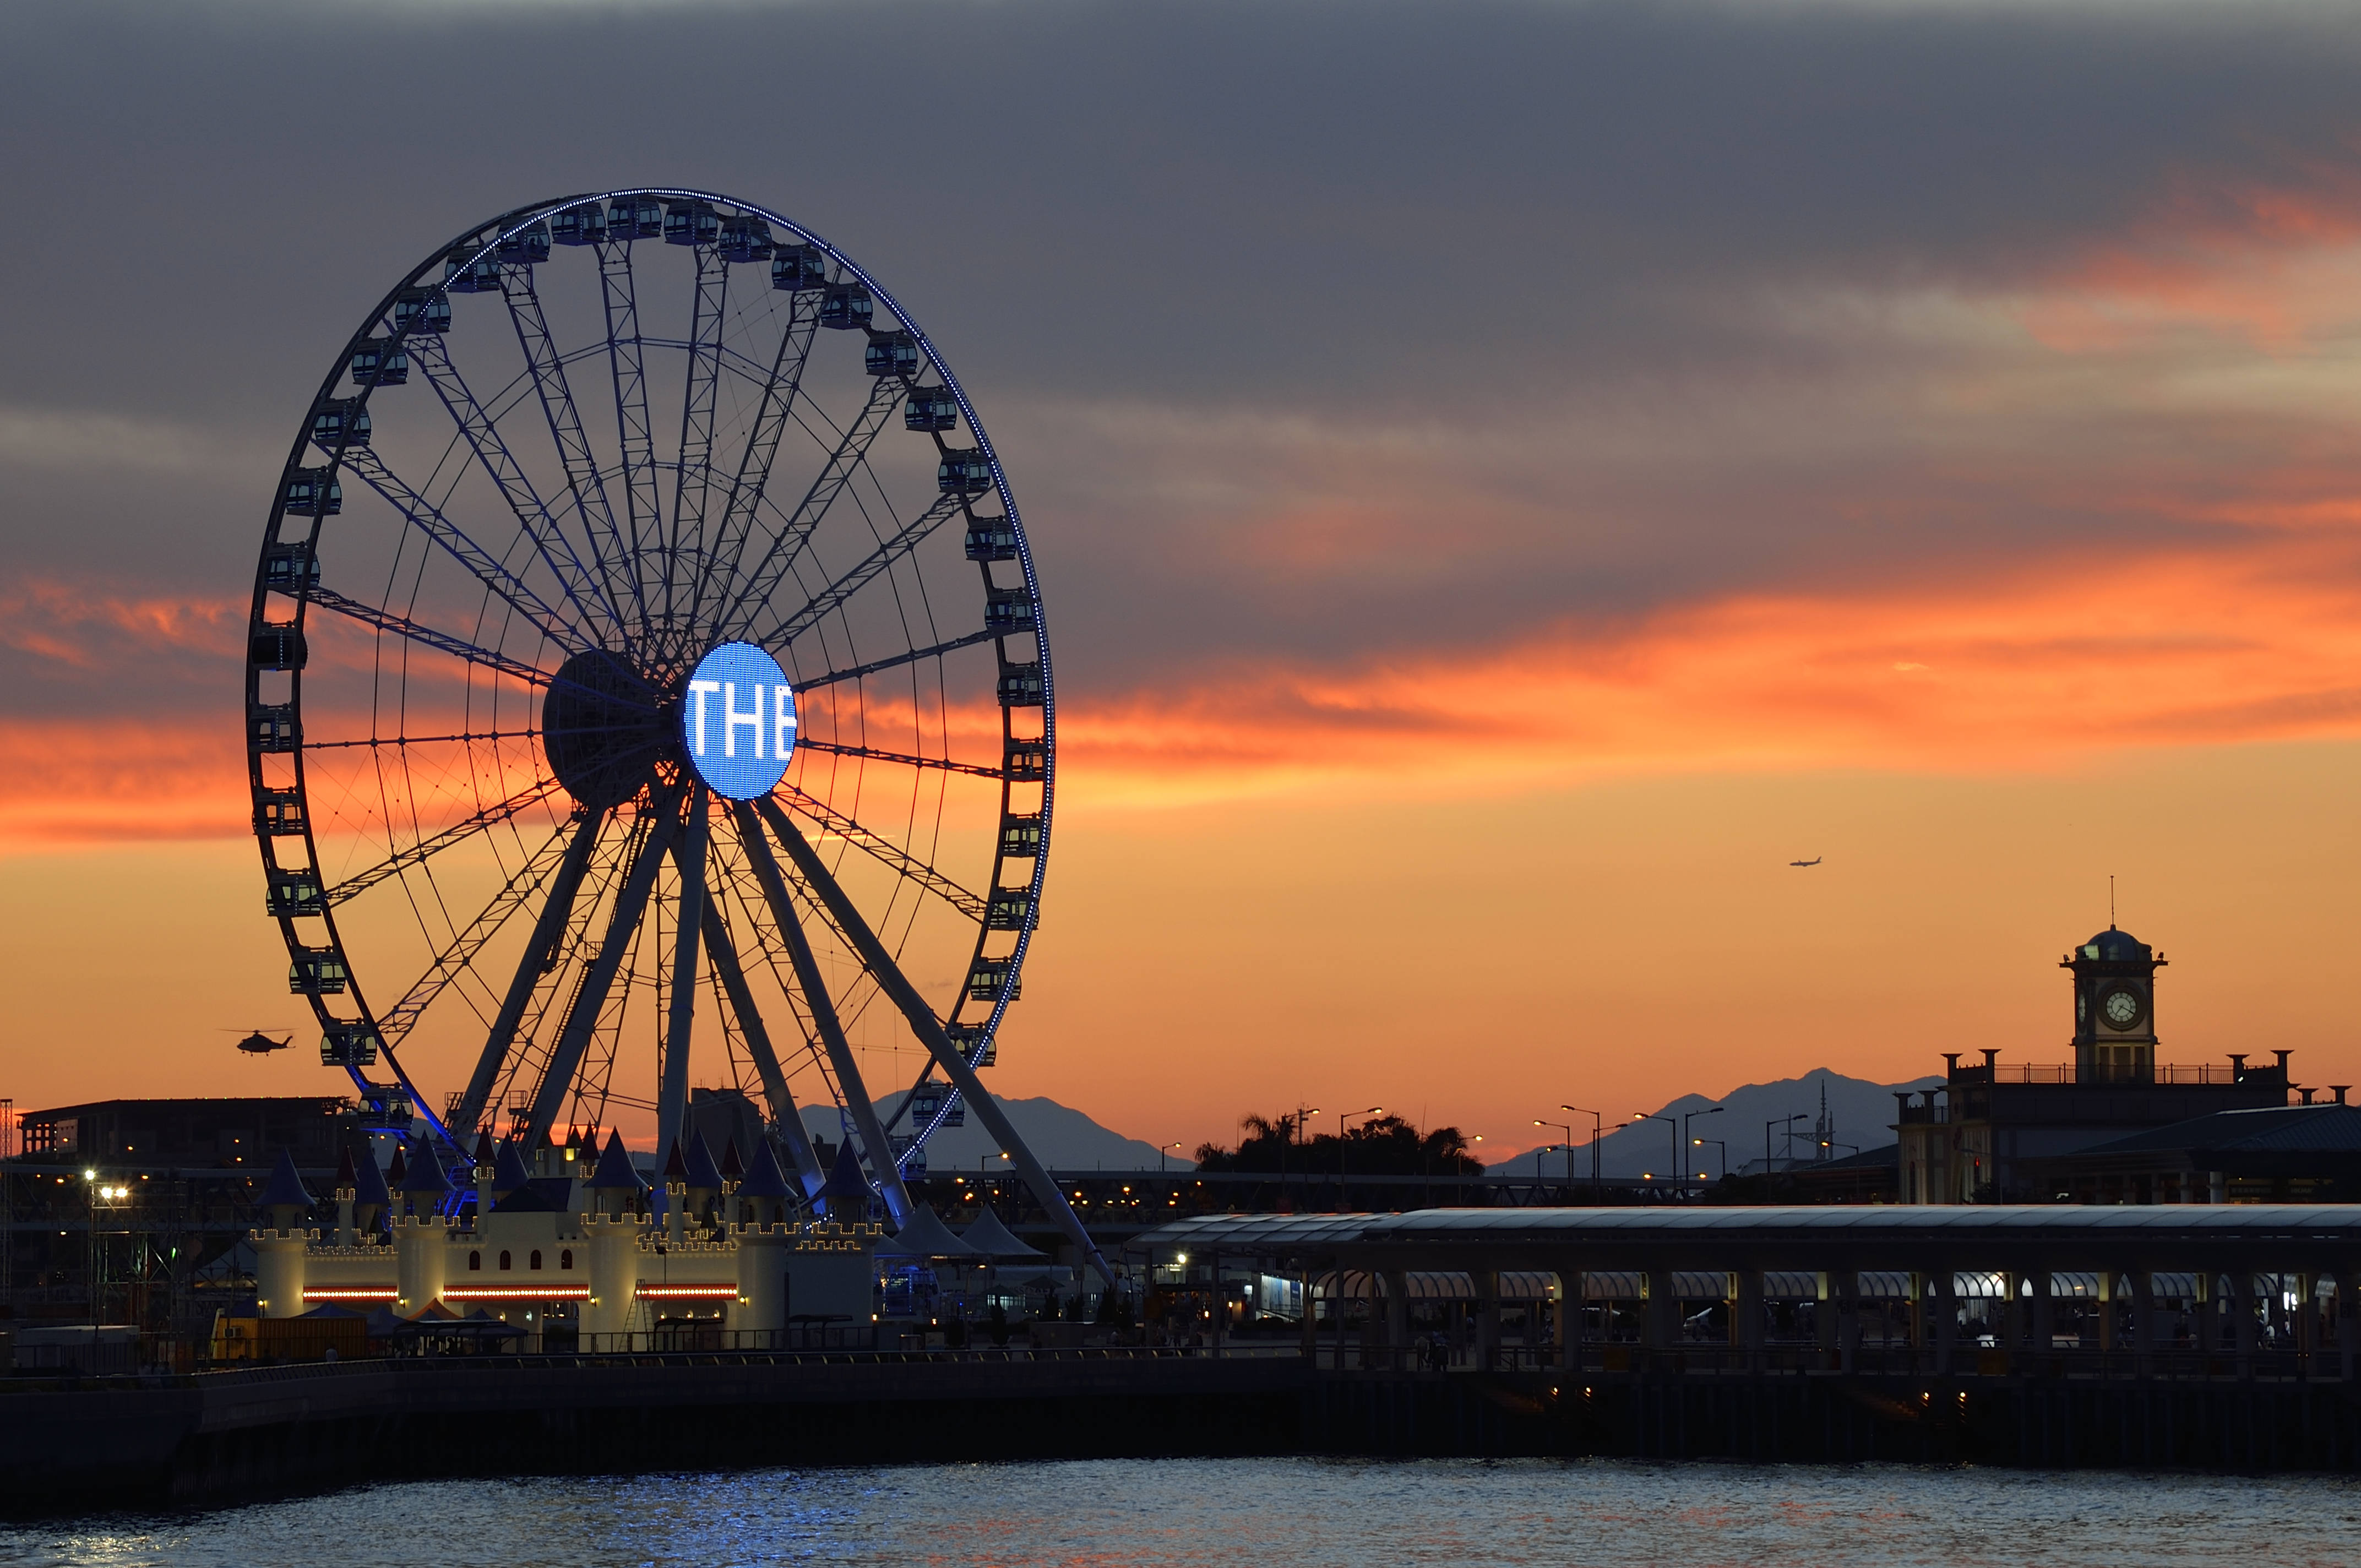 Hong Kong's Ferris wheel to reopen after three months' halt - Nikkei ...